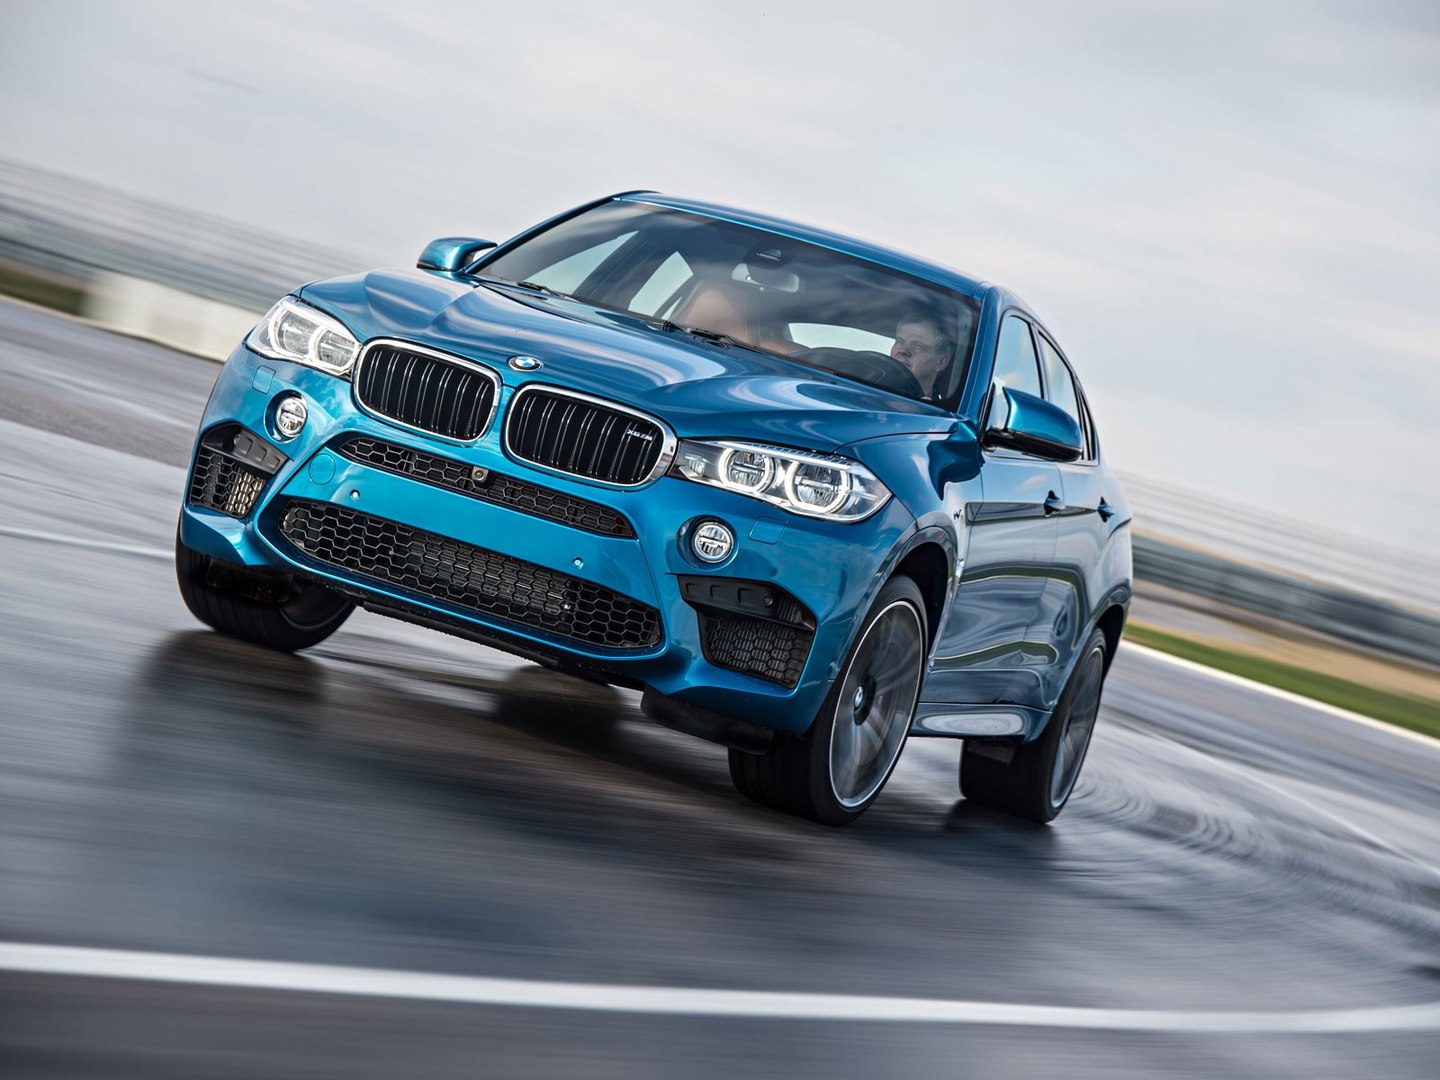 Nouveau BMW X6 M : nos 1eres impressions en vidéo - Vidéo Dailymotion